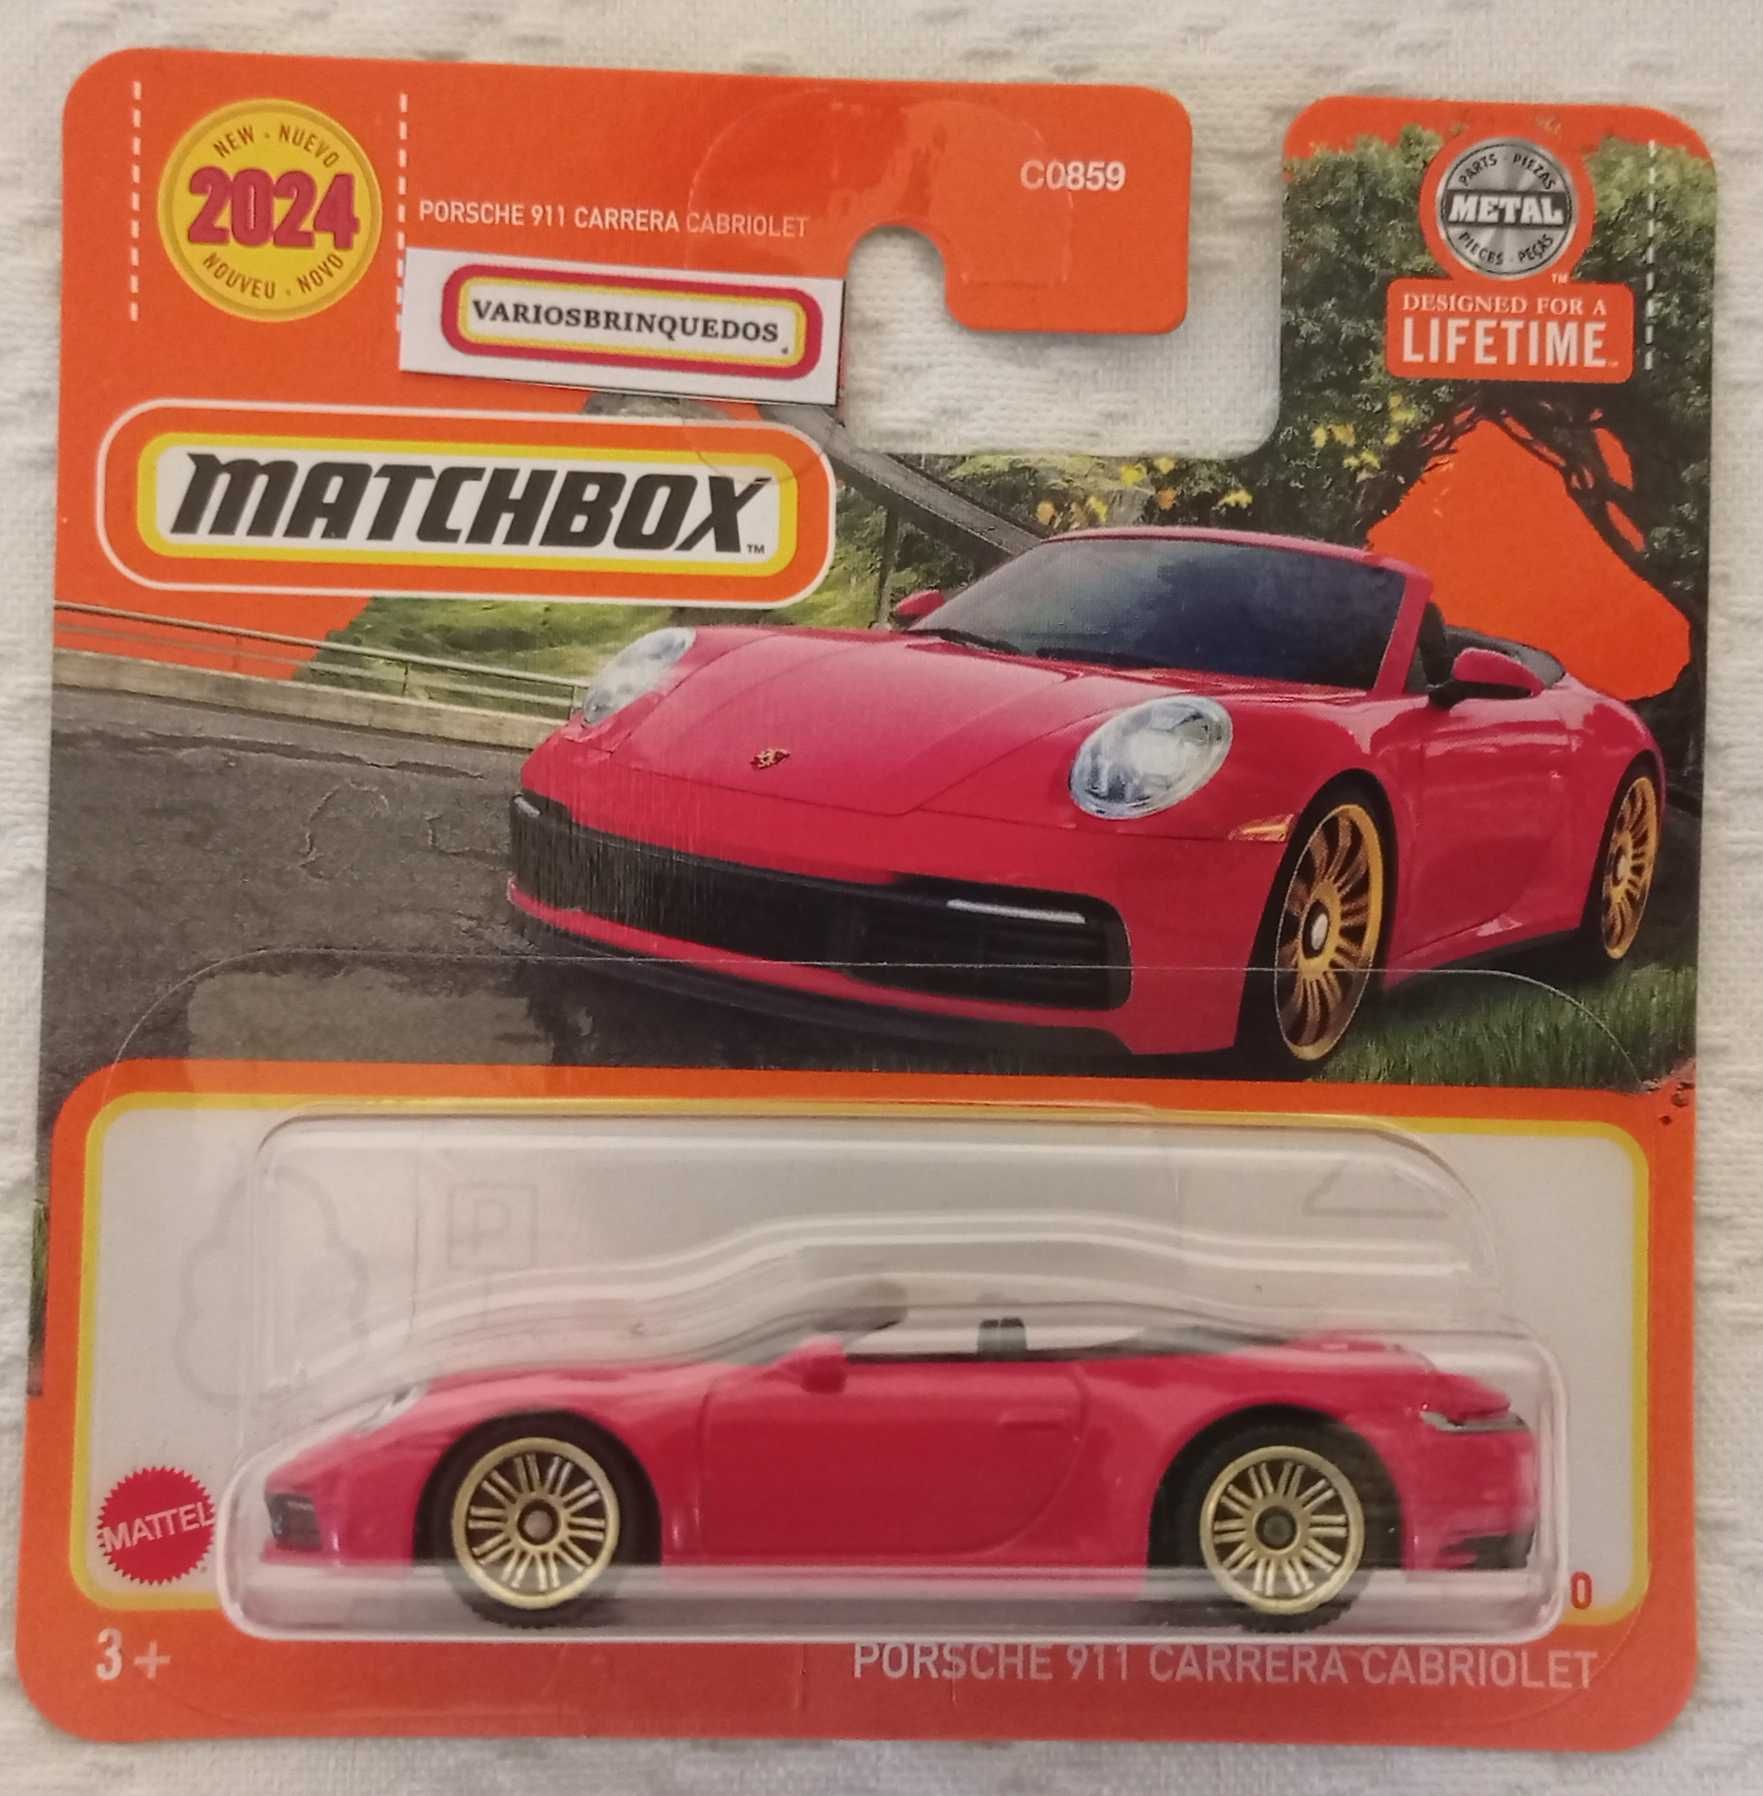 Miniaturas Porsche            Matchbox